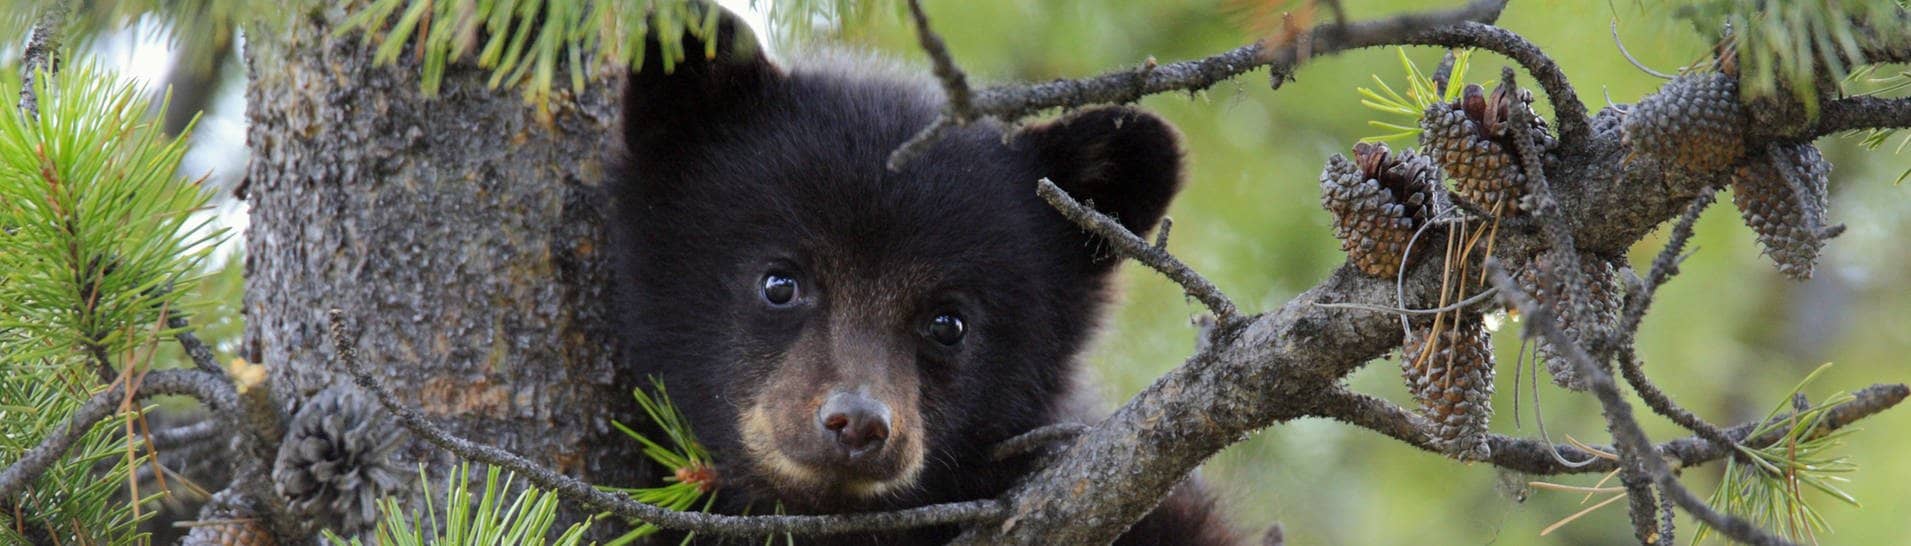 Bären in Kaliforniene begehen Einbrüche:  Ein Schwarzbär-Baby hängt im Baum (Symbolfoto)